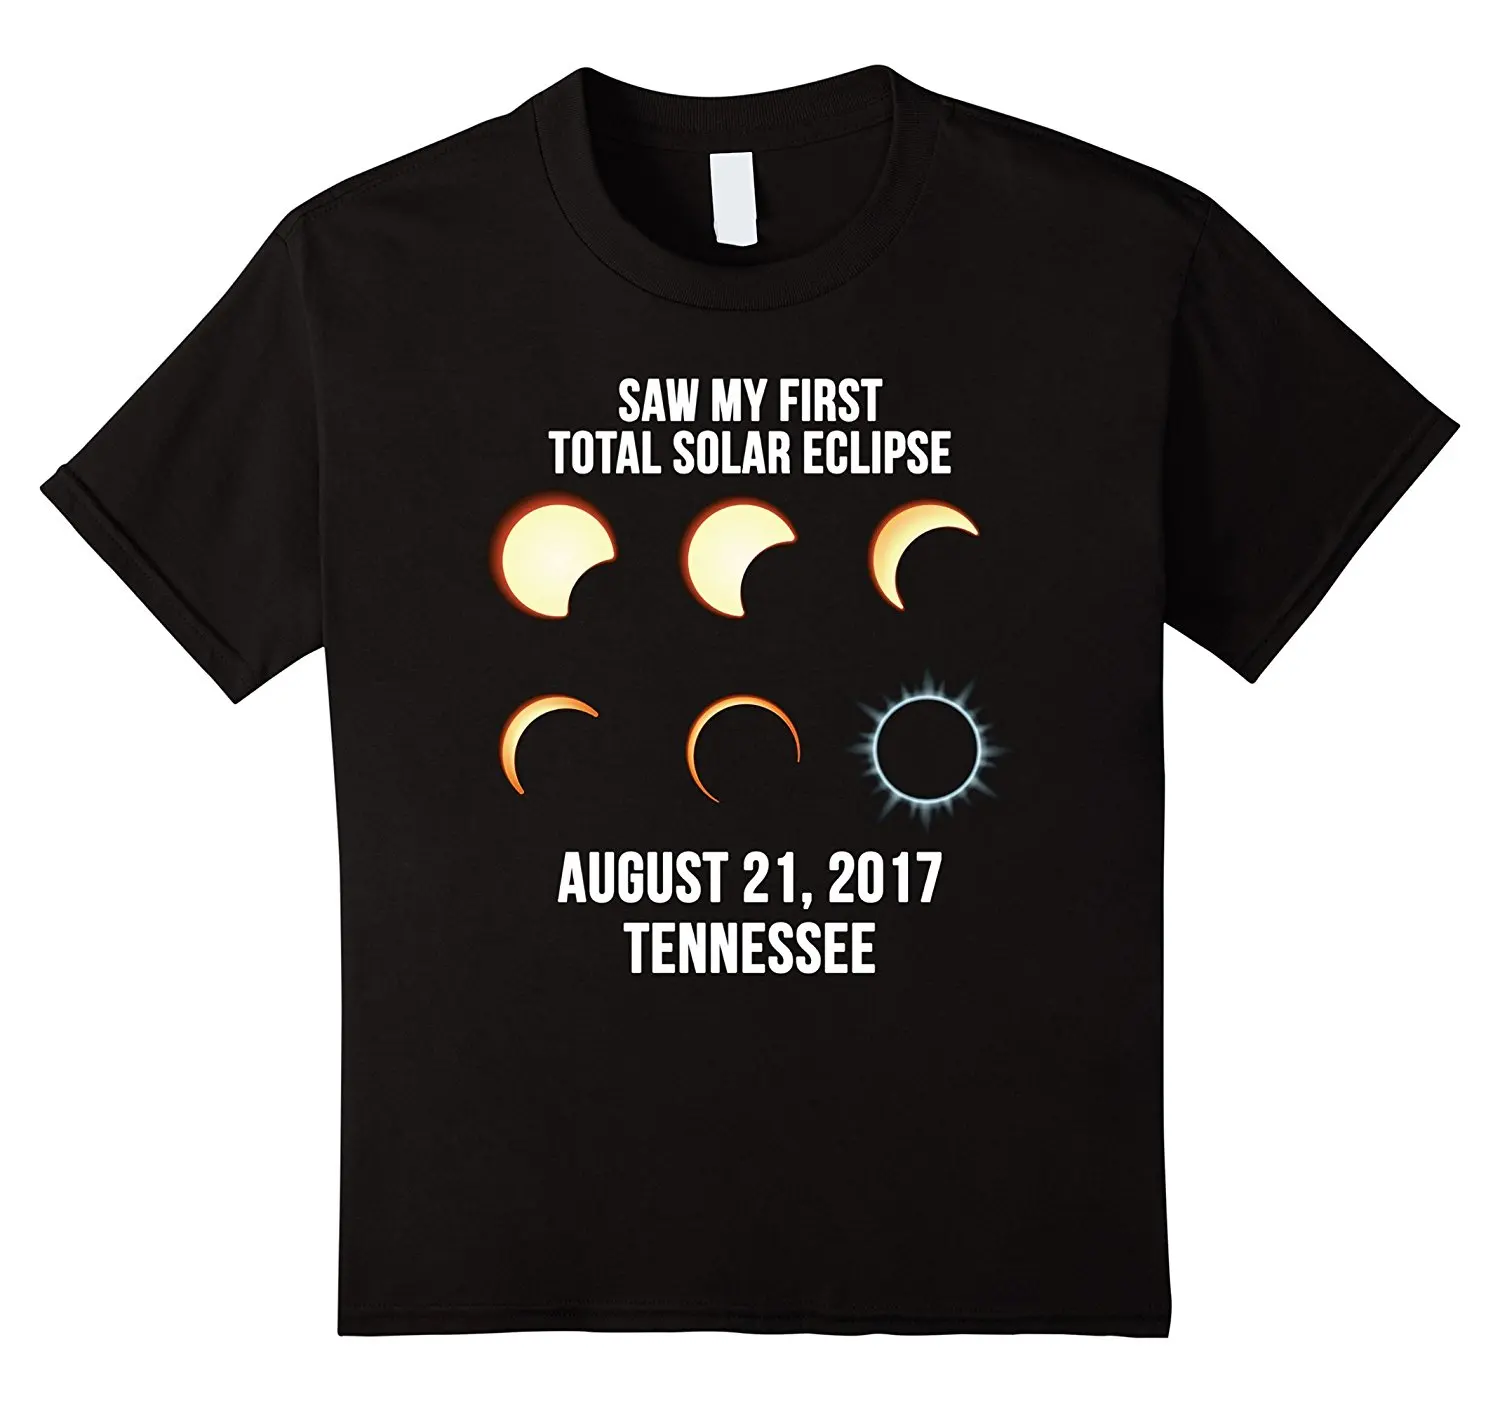 2019 горячая Распродажа 100% хлопок Теннесси всего солнечное затмение 2019 футболка события